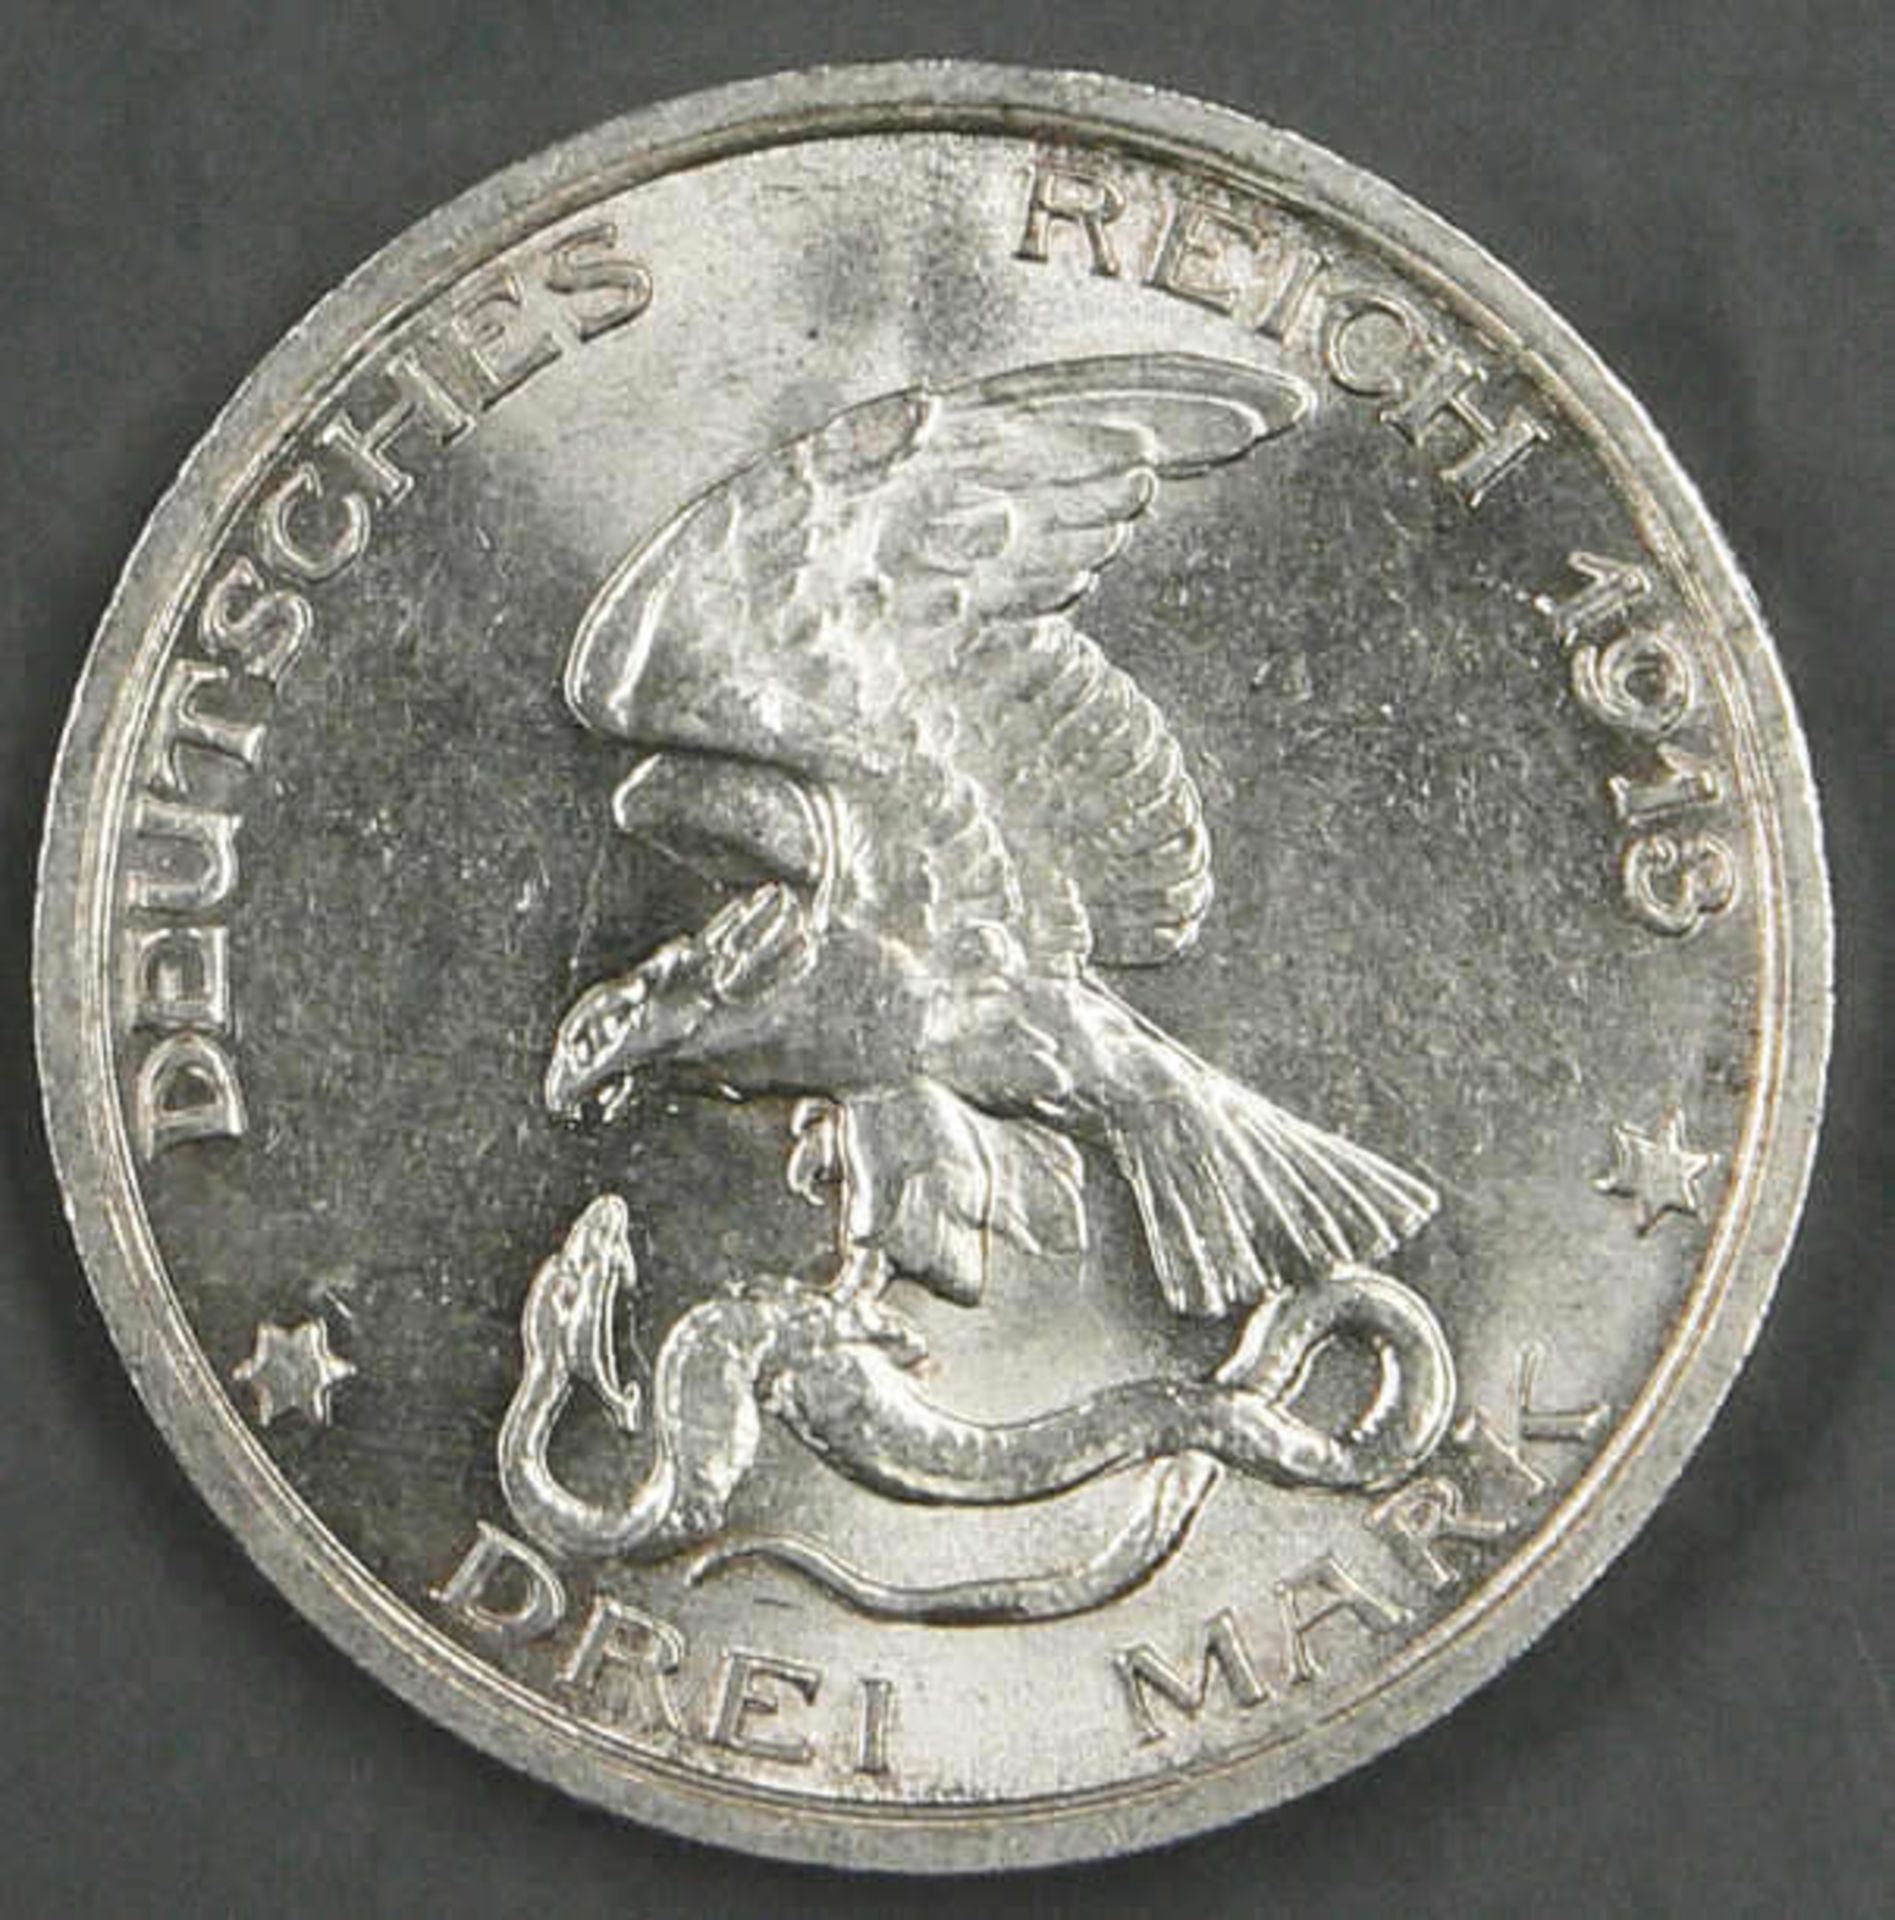 Deutsches Kaiserreich Preußen 1913. 3 Mark - Silbermünzen "Der König rief". Jaeger: 110. - Bild 2 aus 2